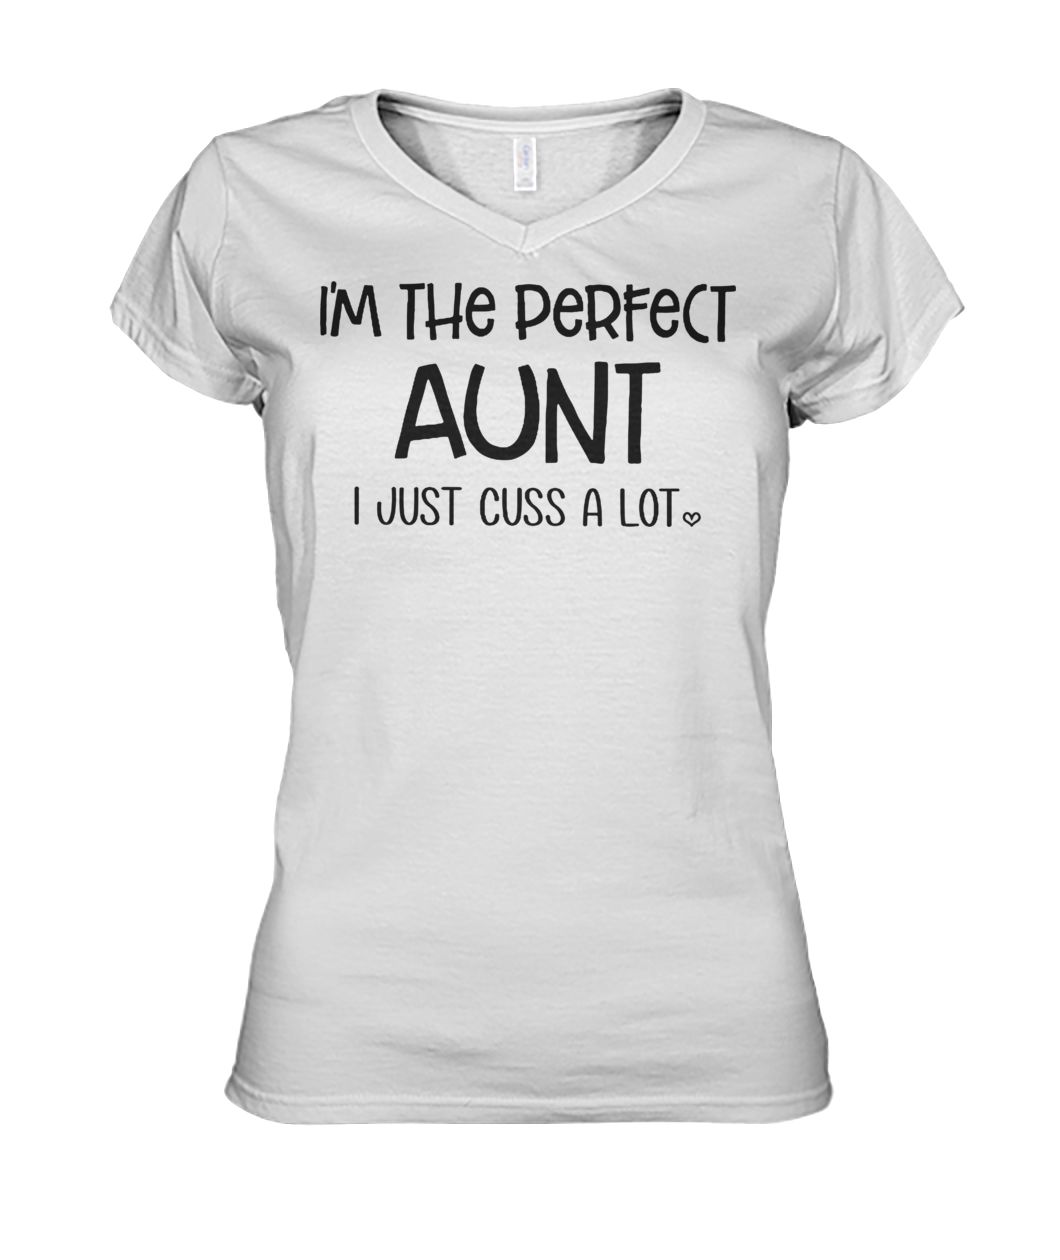 I'm the perfect aunt I just cuss a lot women's v-neck